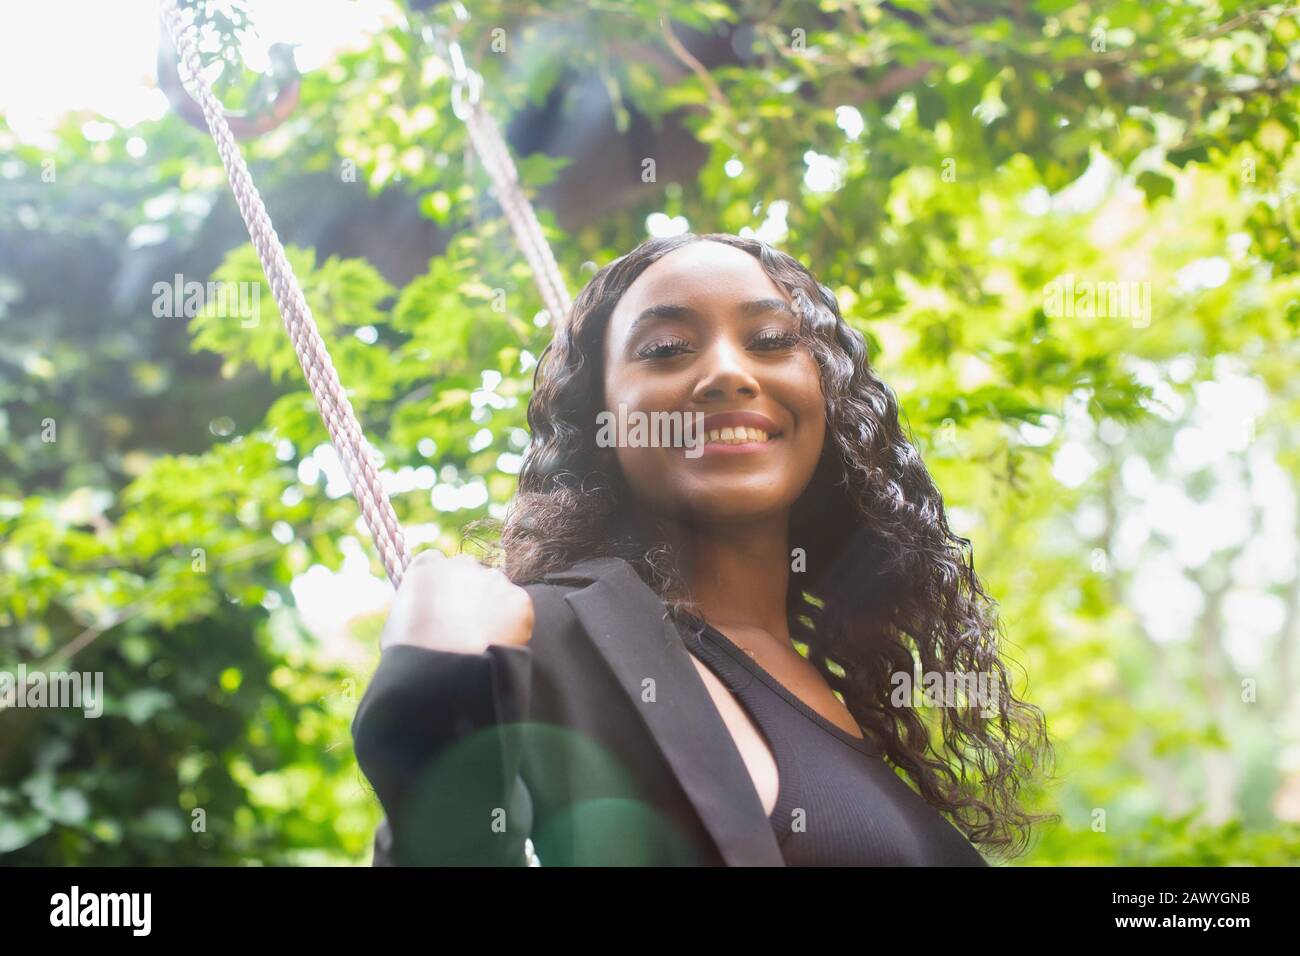 Portrait selbstbewusste schöne junge Frau auf dem Schwingen Stockfoto